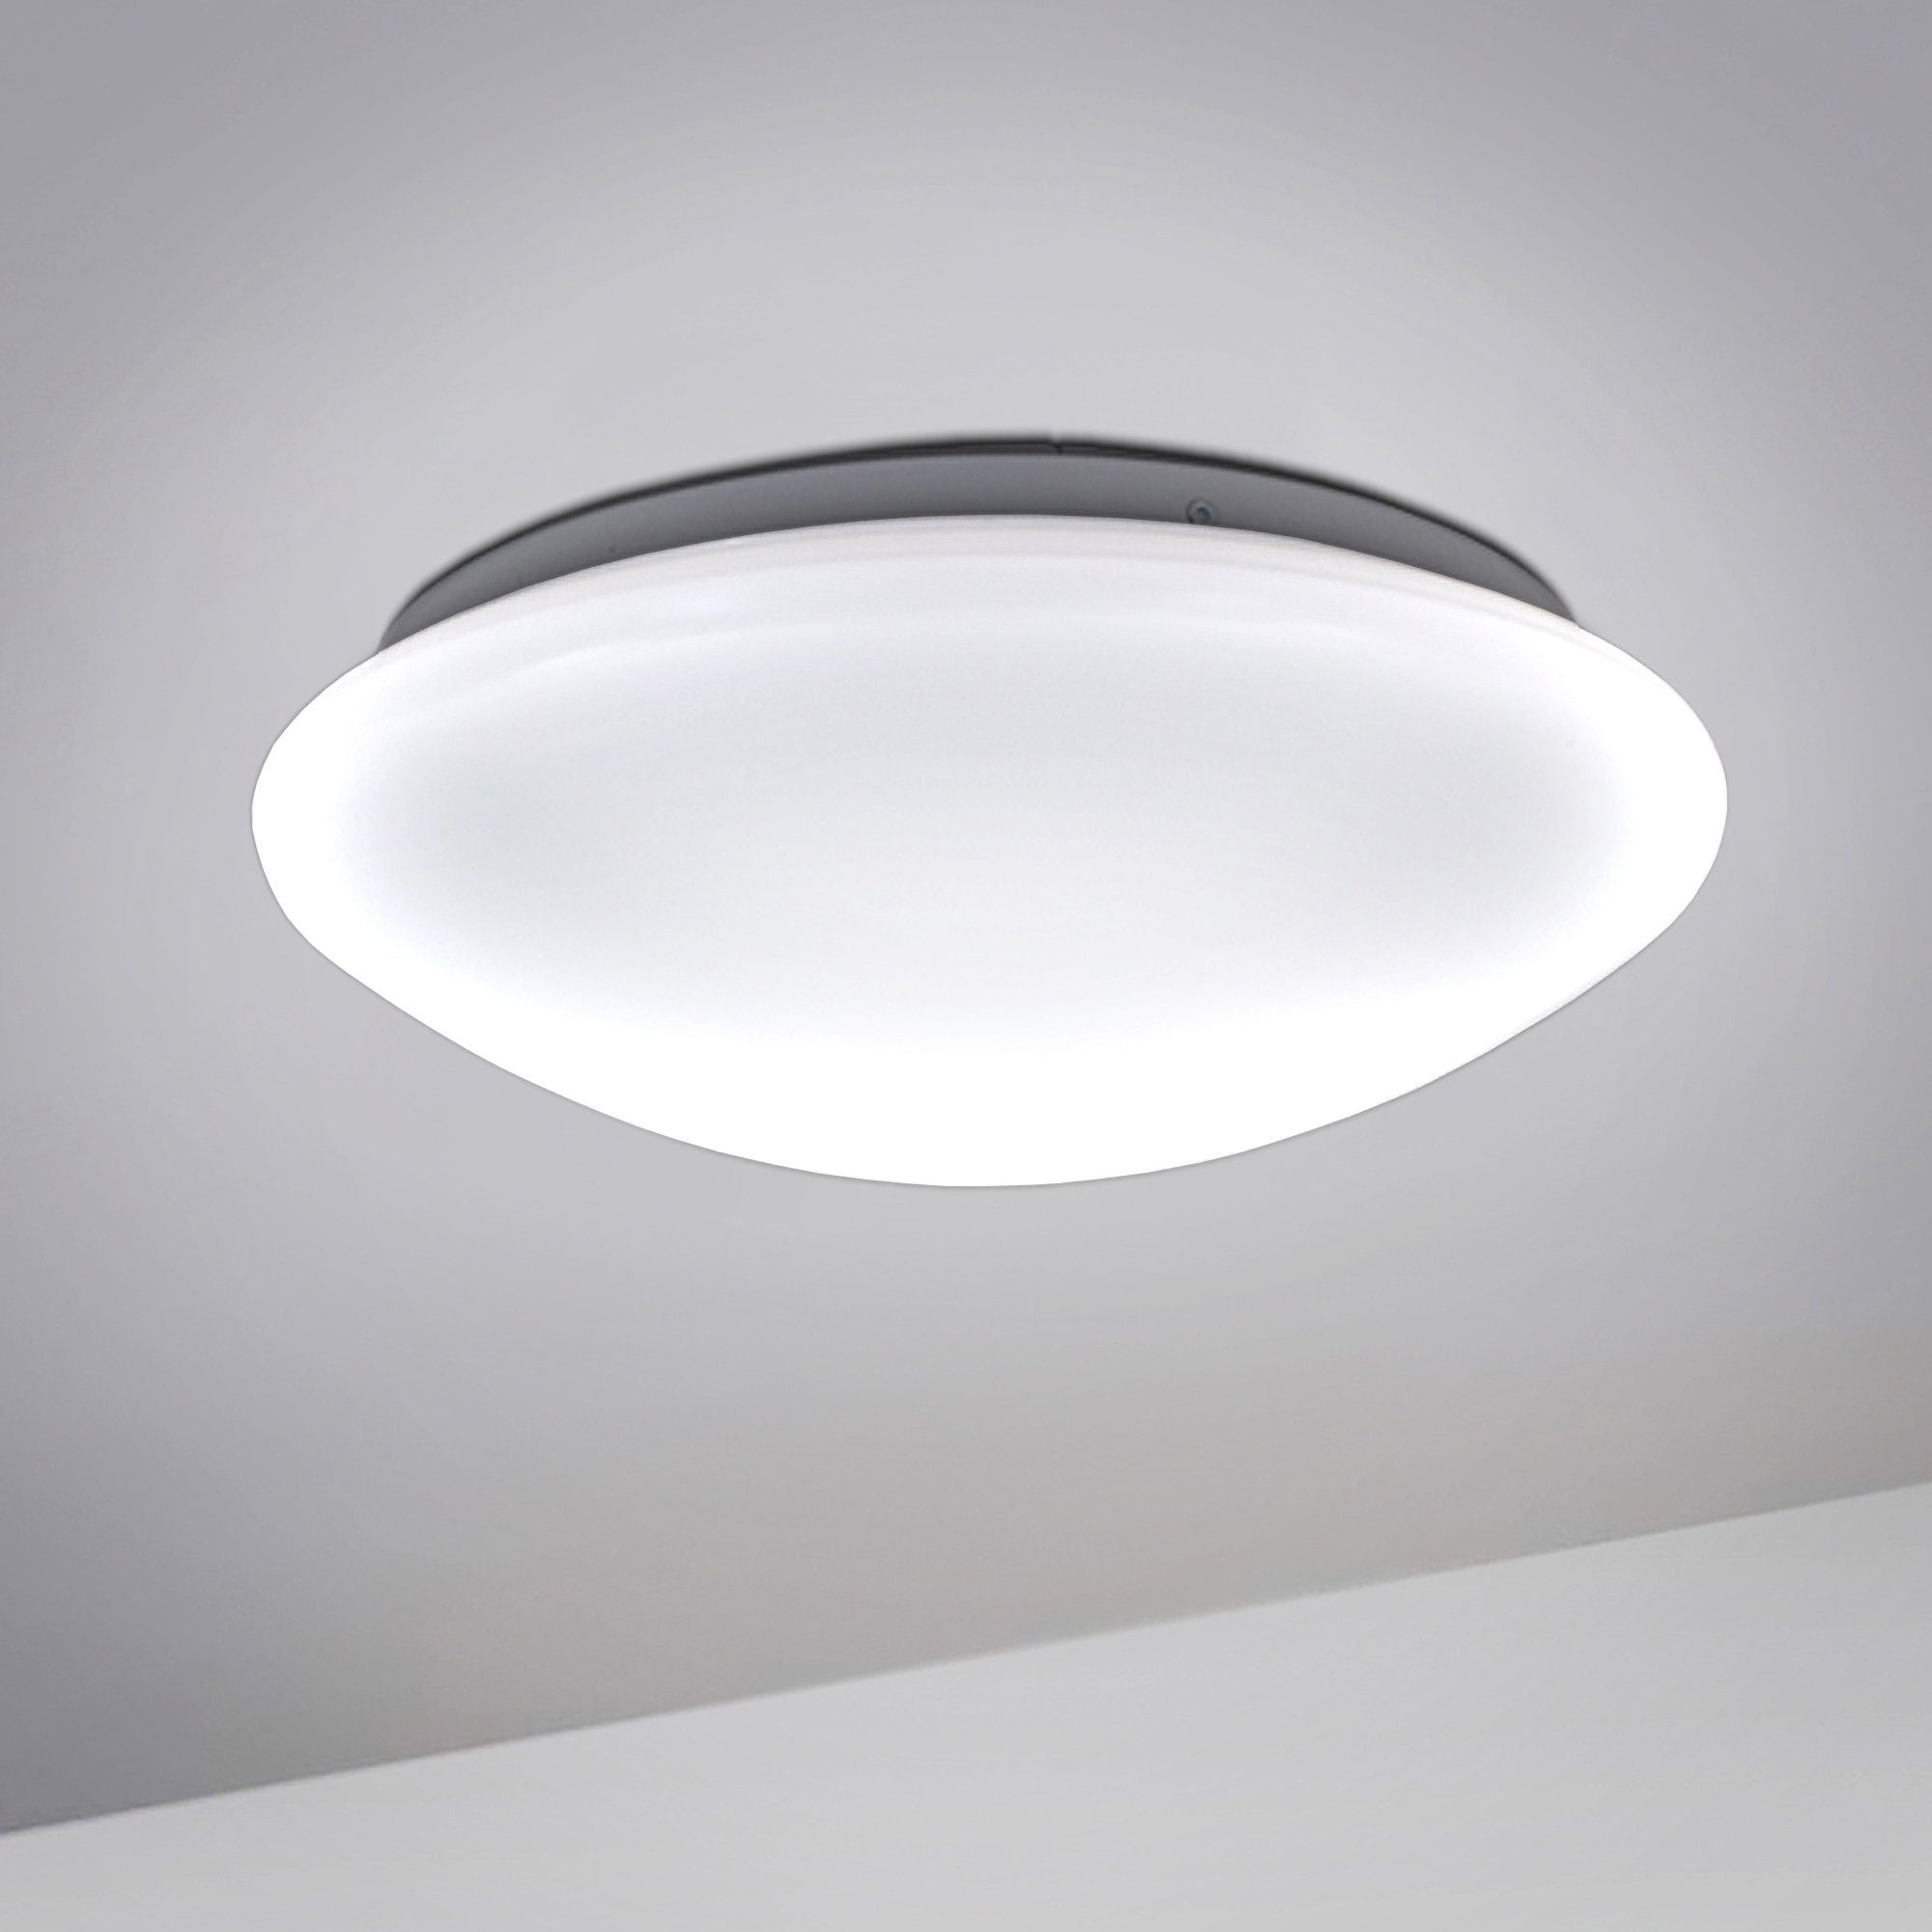 LED Deckenleuchte Badezimmer-Leuchte IP44 Bad-Lampe Decke Wand Küche Wohnzimmer 